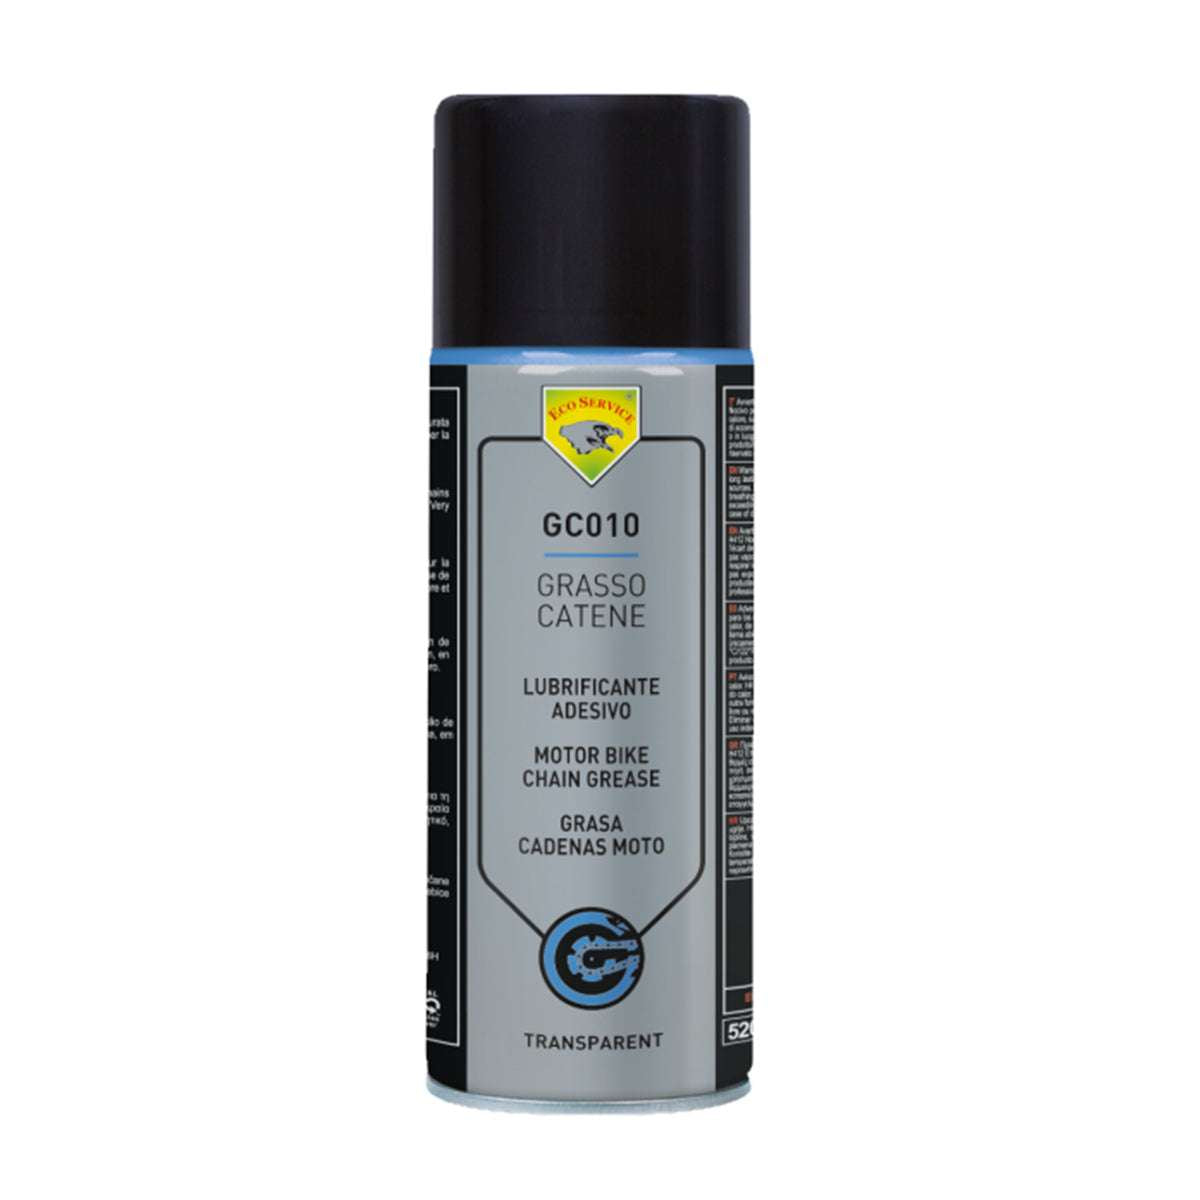 Grasso Catene Spray 400ml lubrificazione catena moto - Eco Service GC0